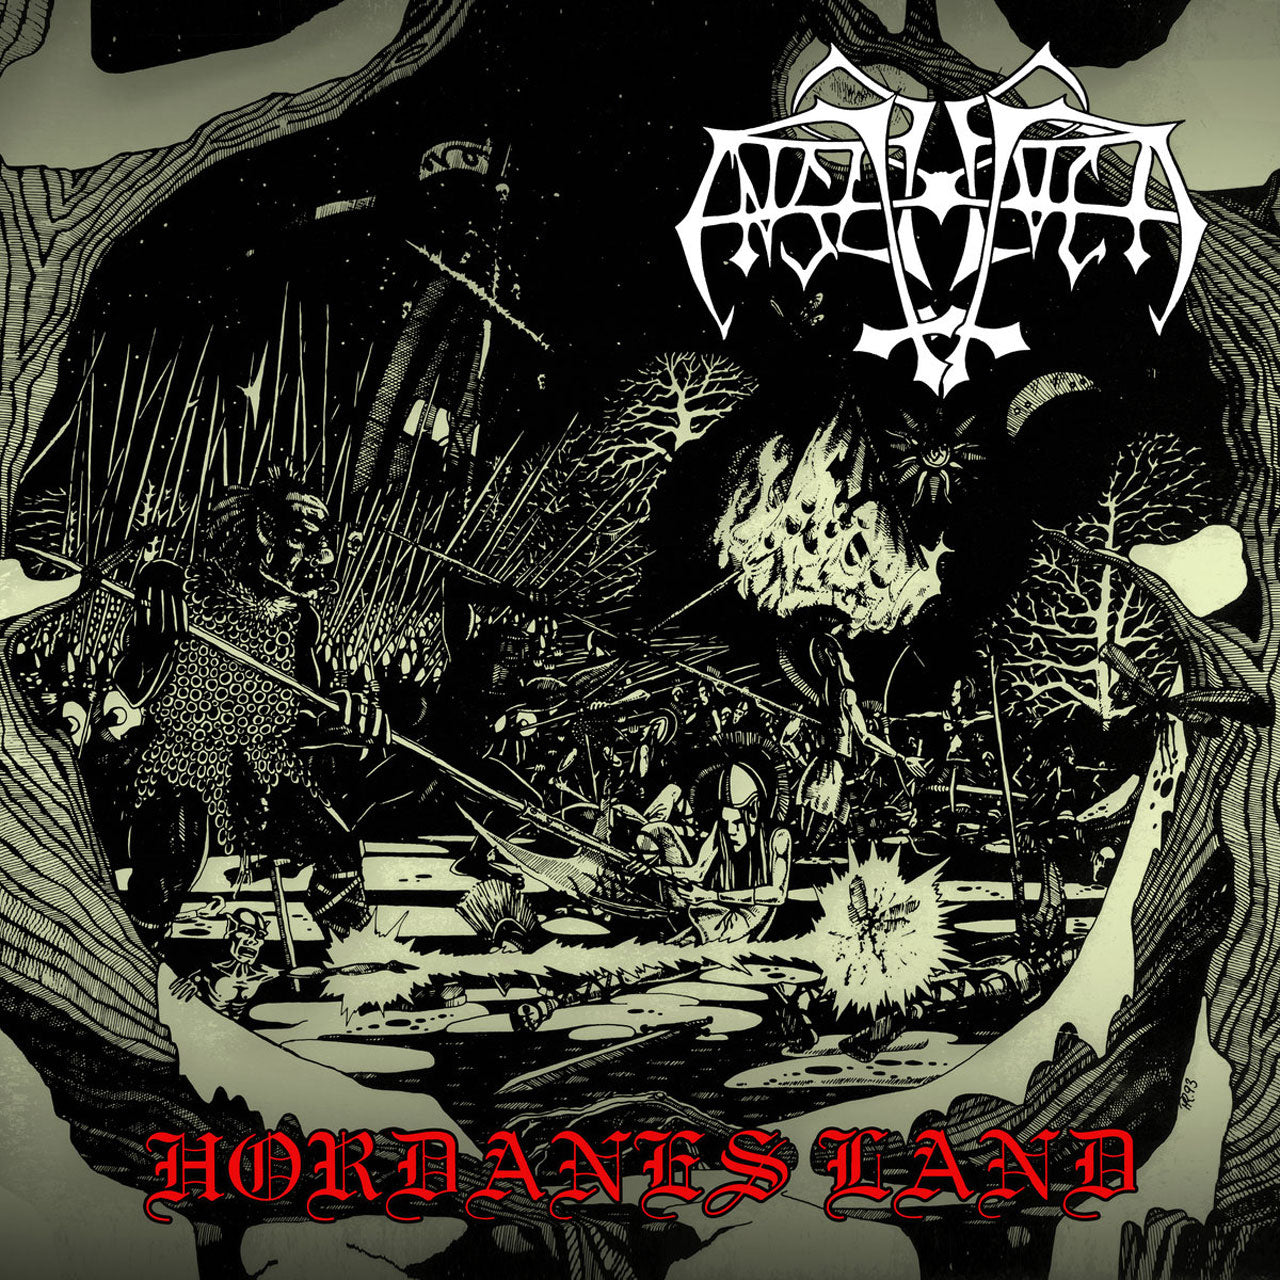 Enslaved - Hordanes Land (2018 Reissue) (Digipak CD)